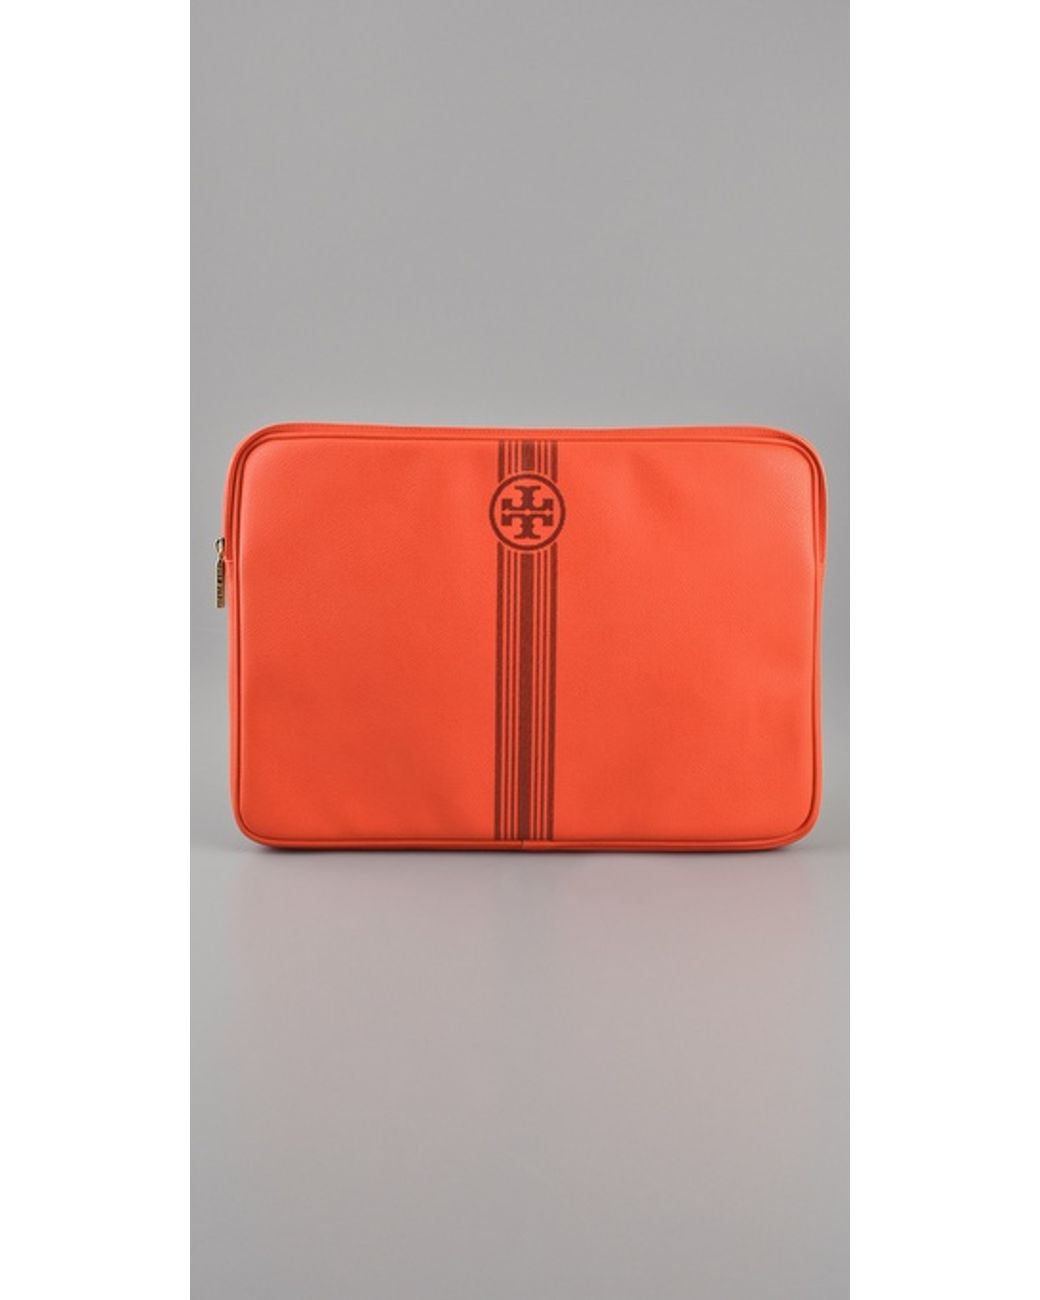 Tory Burch Roslyn Laptop Sleeve in Orange | Lyst